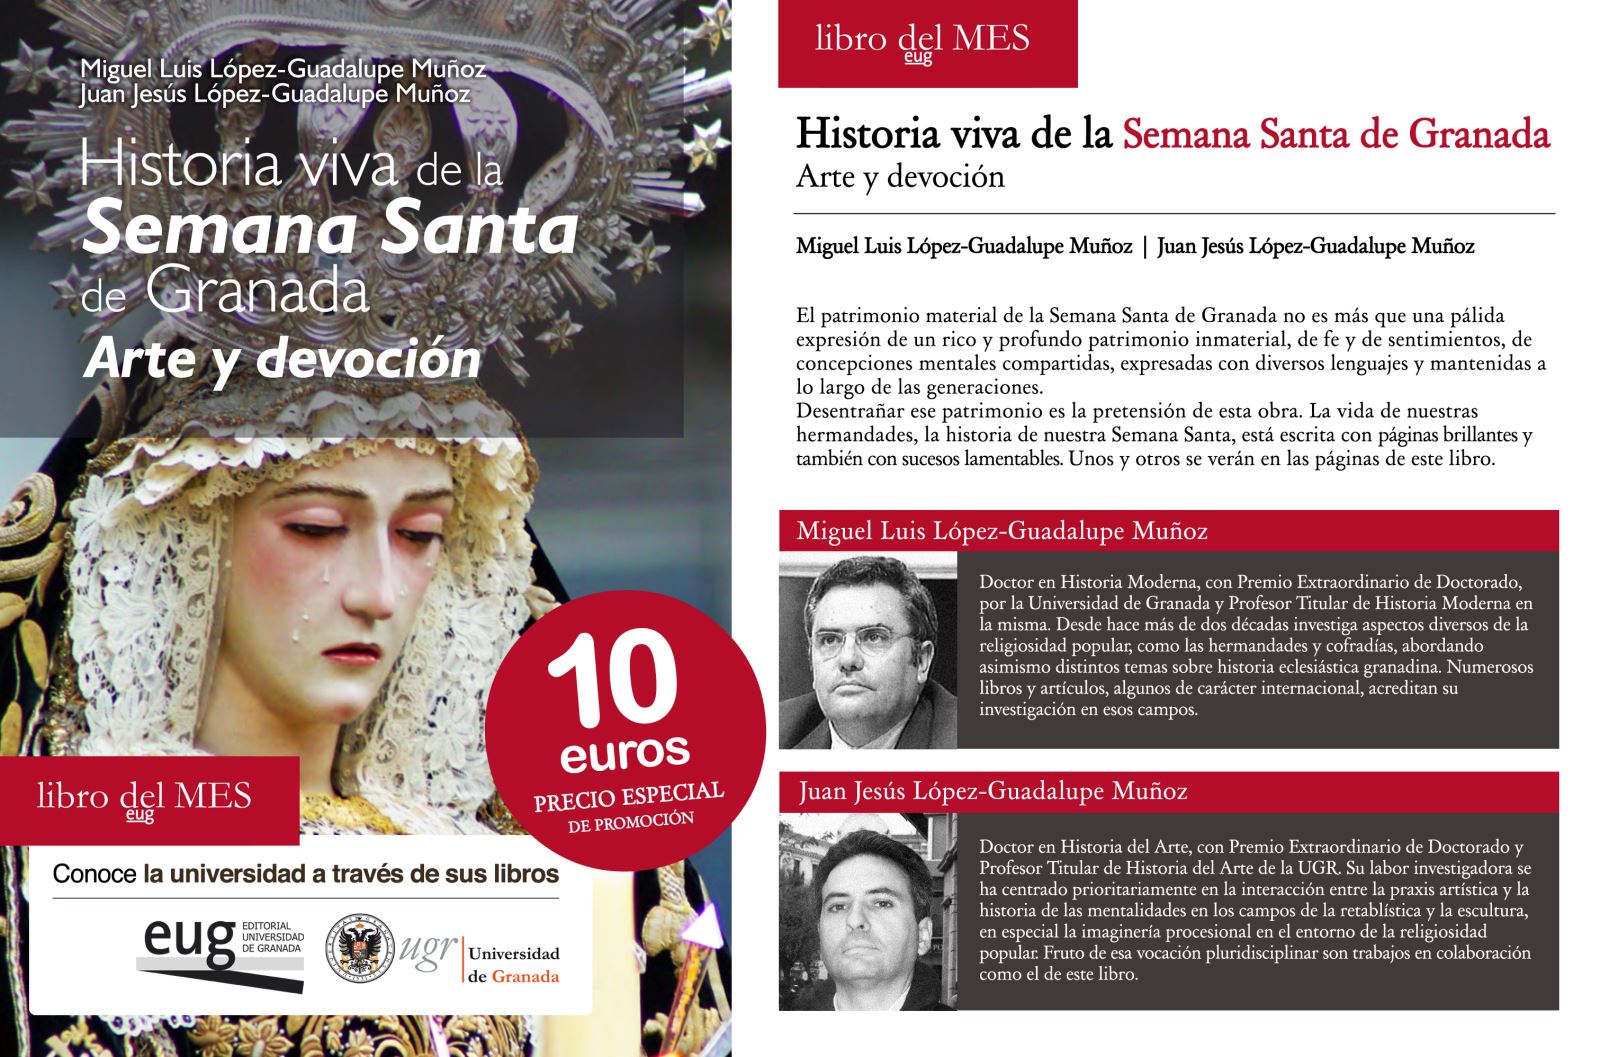 "Historia viva de la Semana Santa de Granada. Arte y devoción", libro del mes de marzo